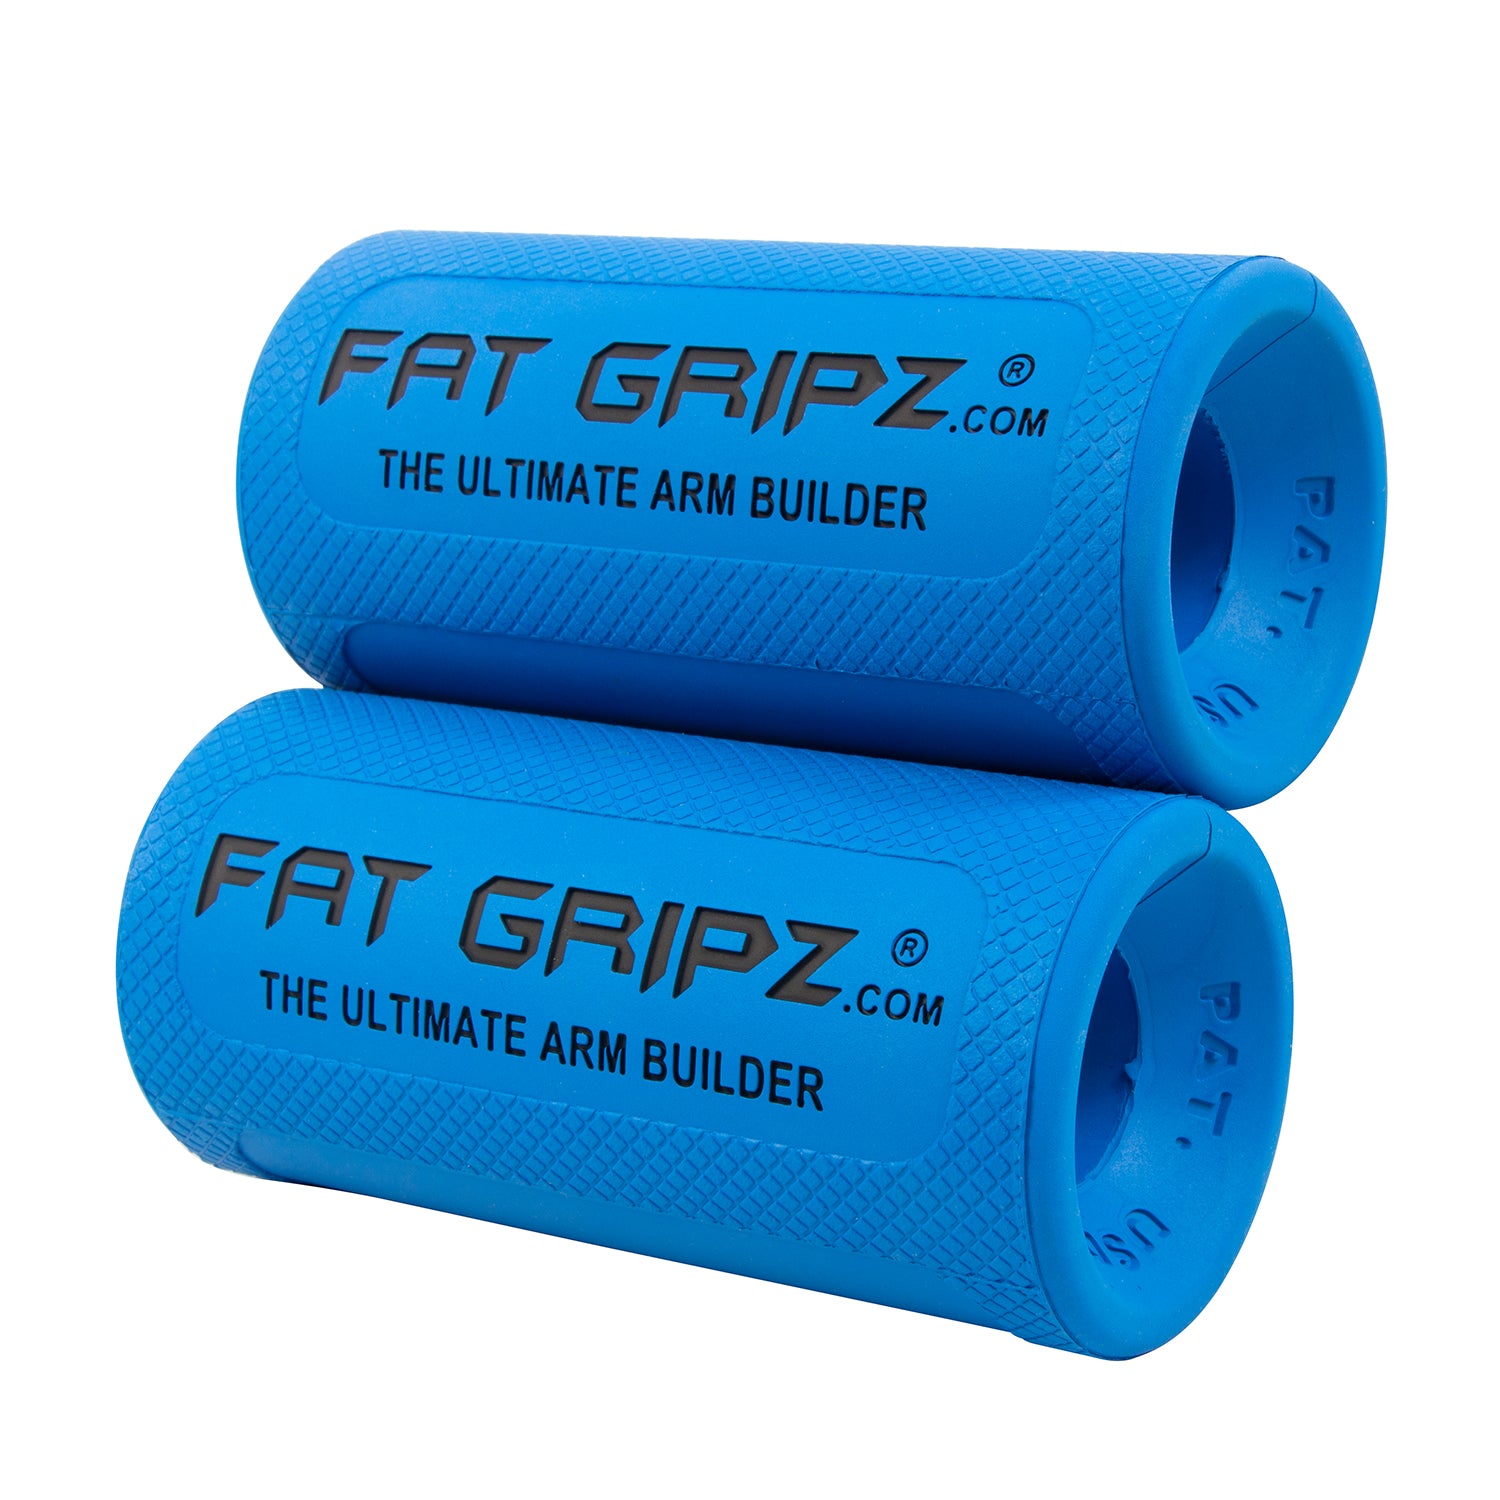 Do Fat Gripz Work? – The Hoot